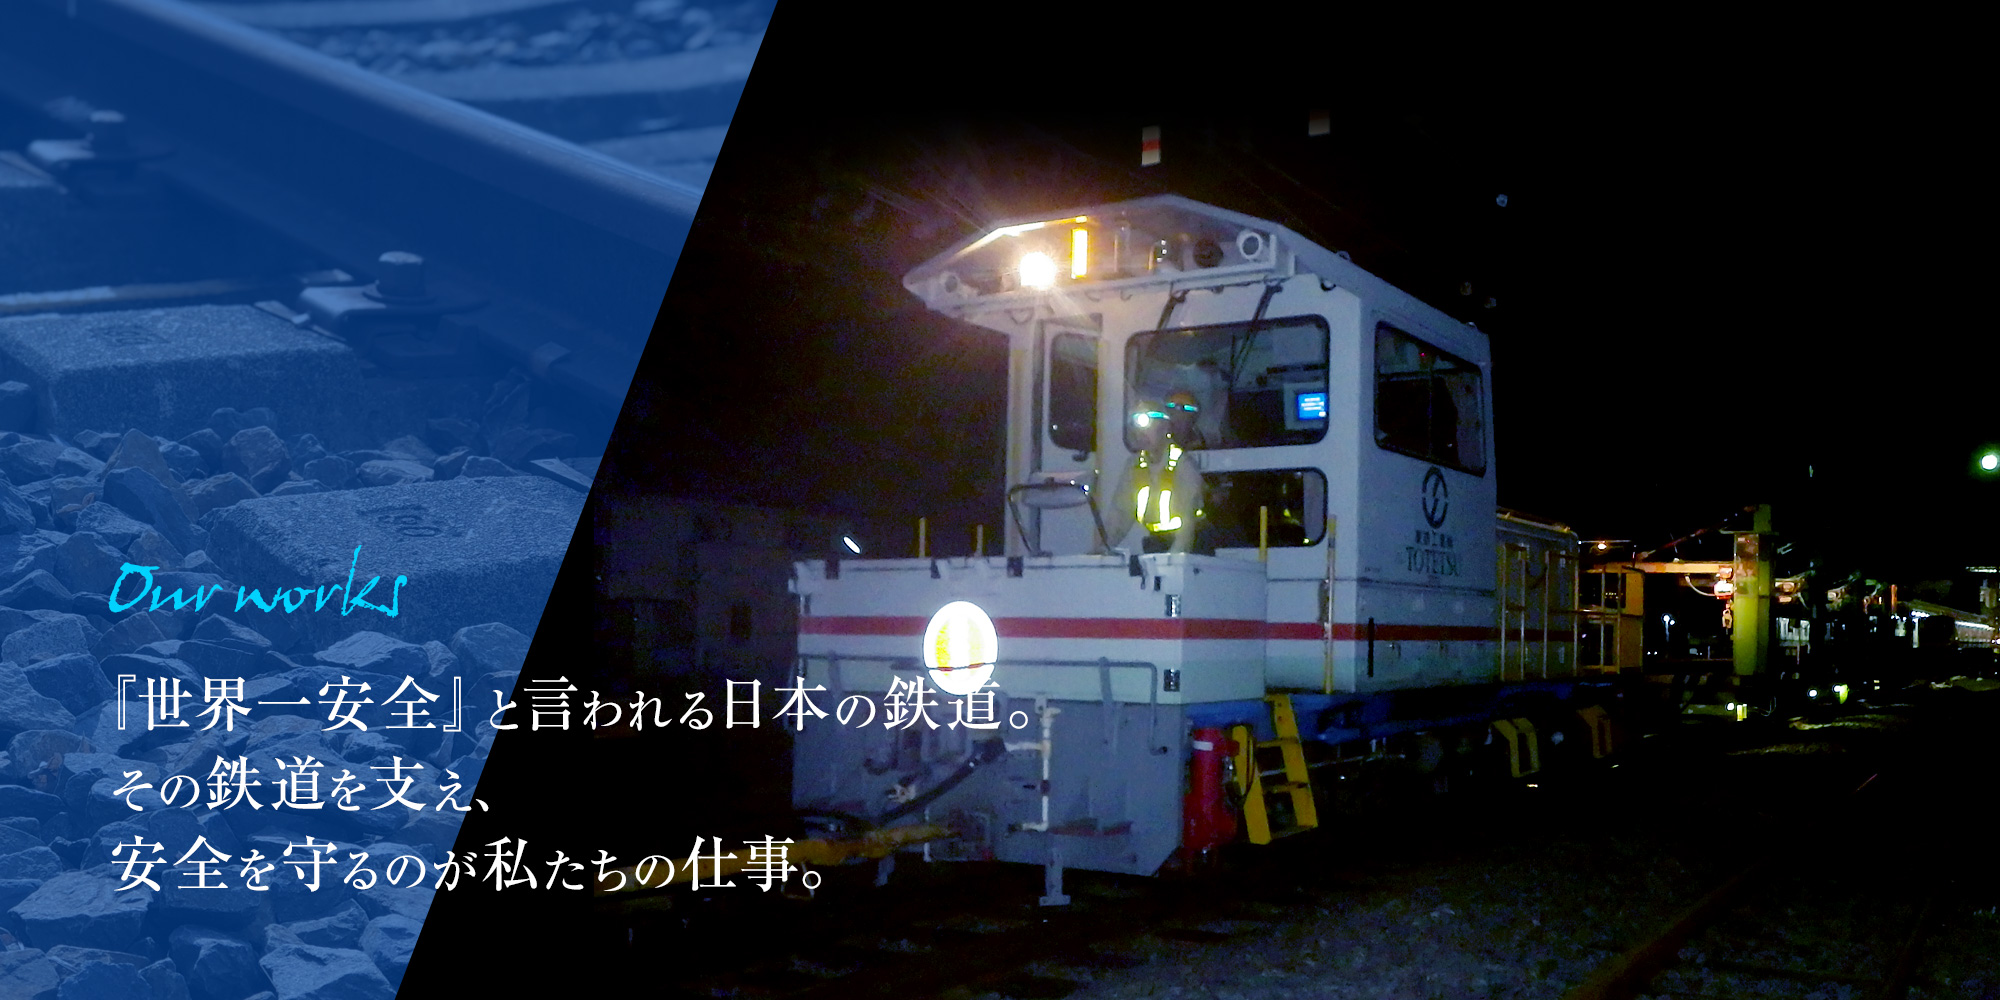 『世界一安全』と言われる日本の鉄道。その鉄道を支え、安全を守るのが私たちの仕事。